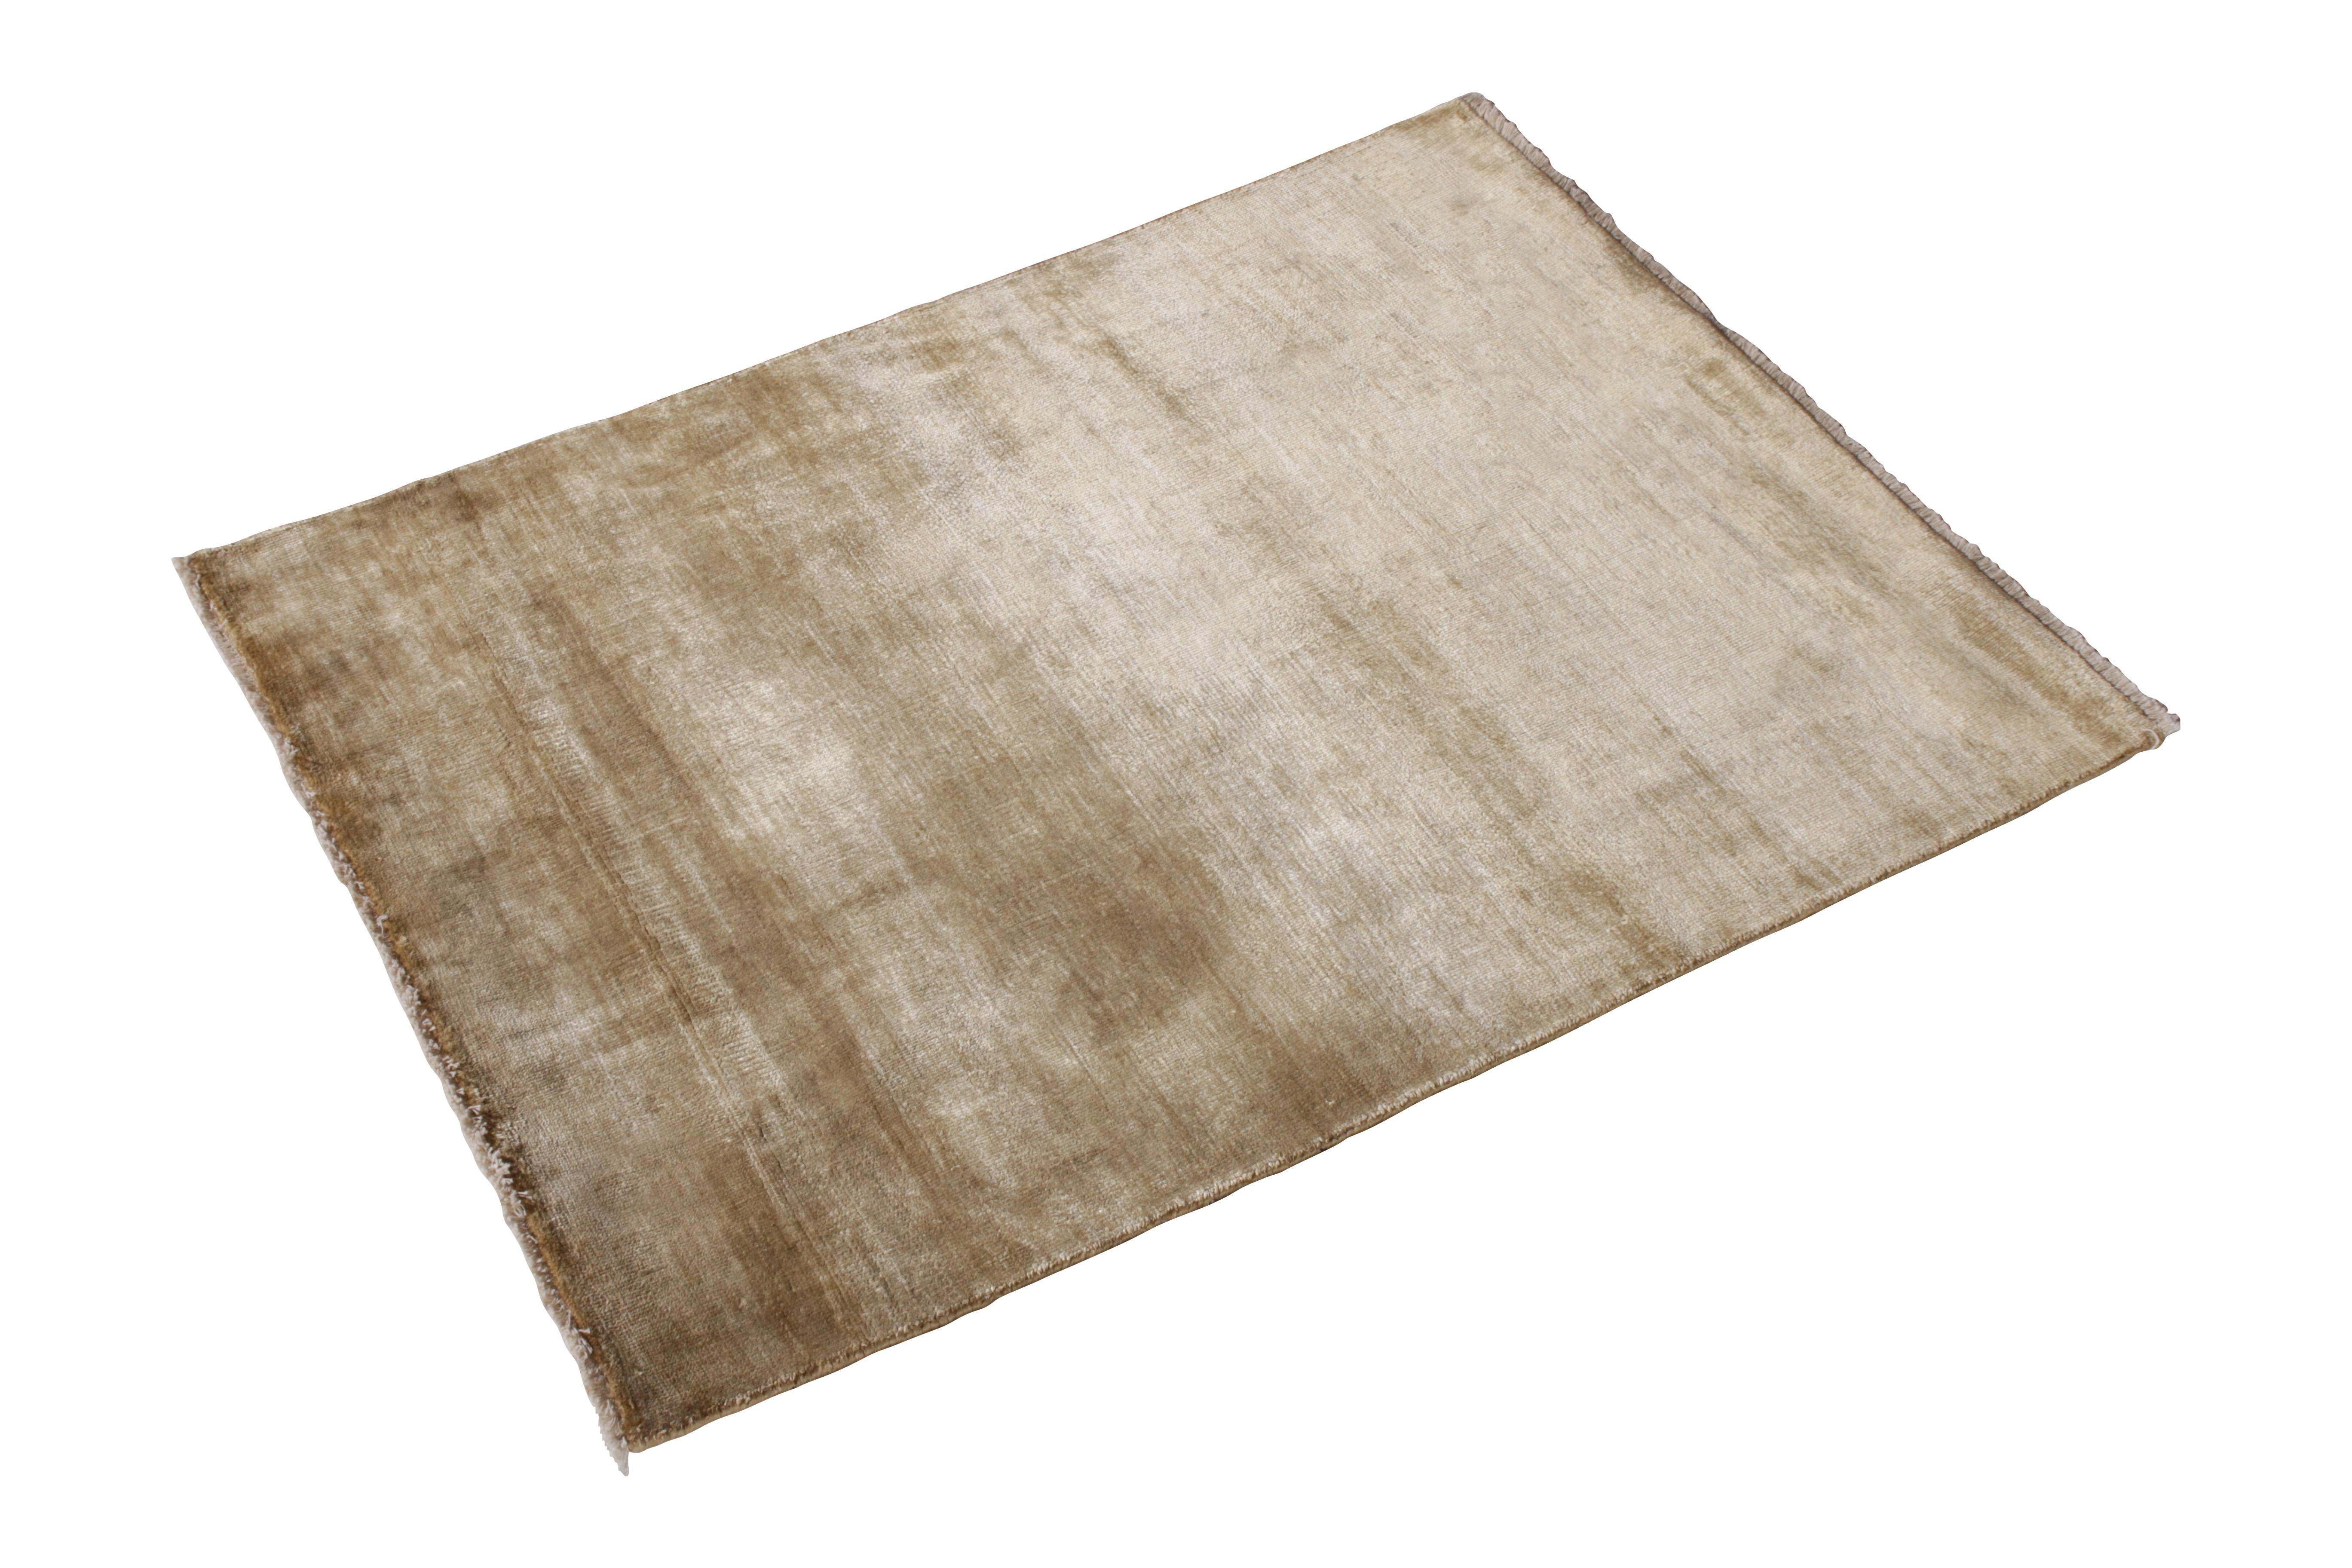 Issu de la Collection Texture of Color de Rug & Kilim, ce tapis contemporain de 2'8x3'3 est noué à la main avec un mélange de soie entièrement naturelle et de soie sari dans cette innovation de styles de tapis unis et de polyvalence confortable. La